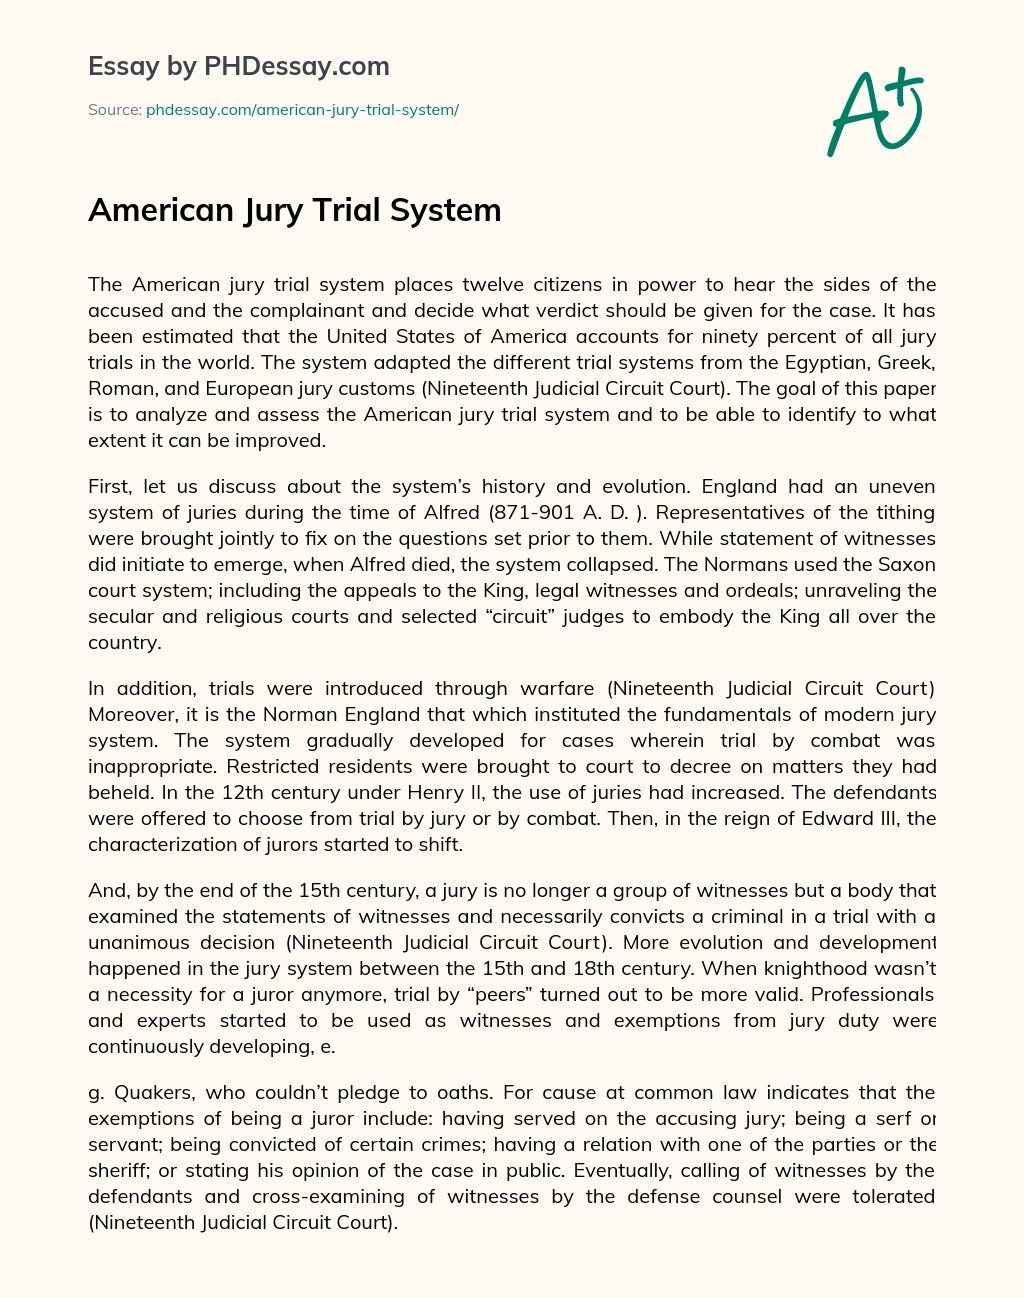 American Jury Trial System essay